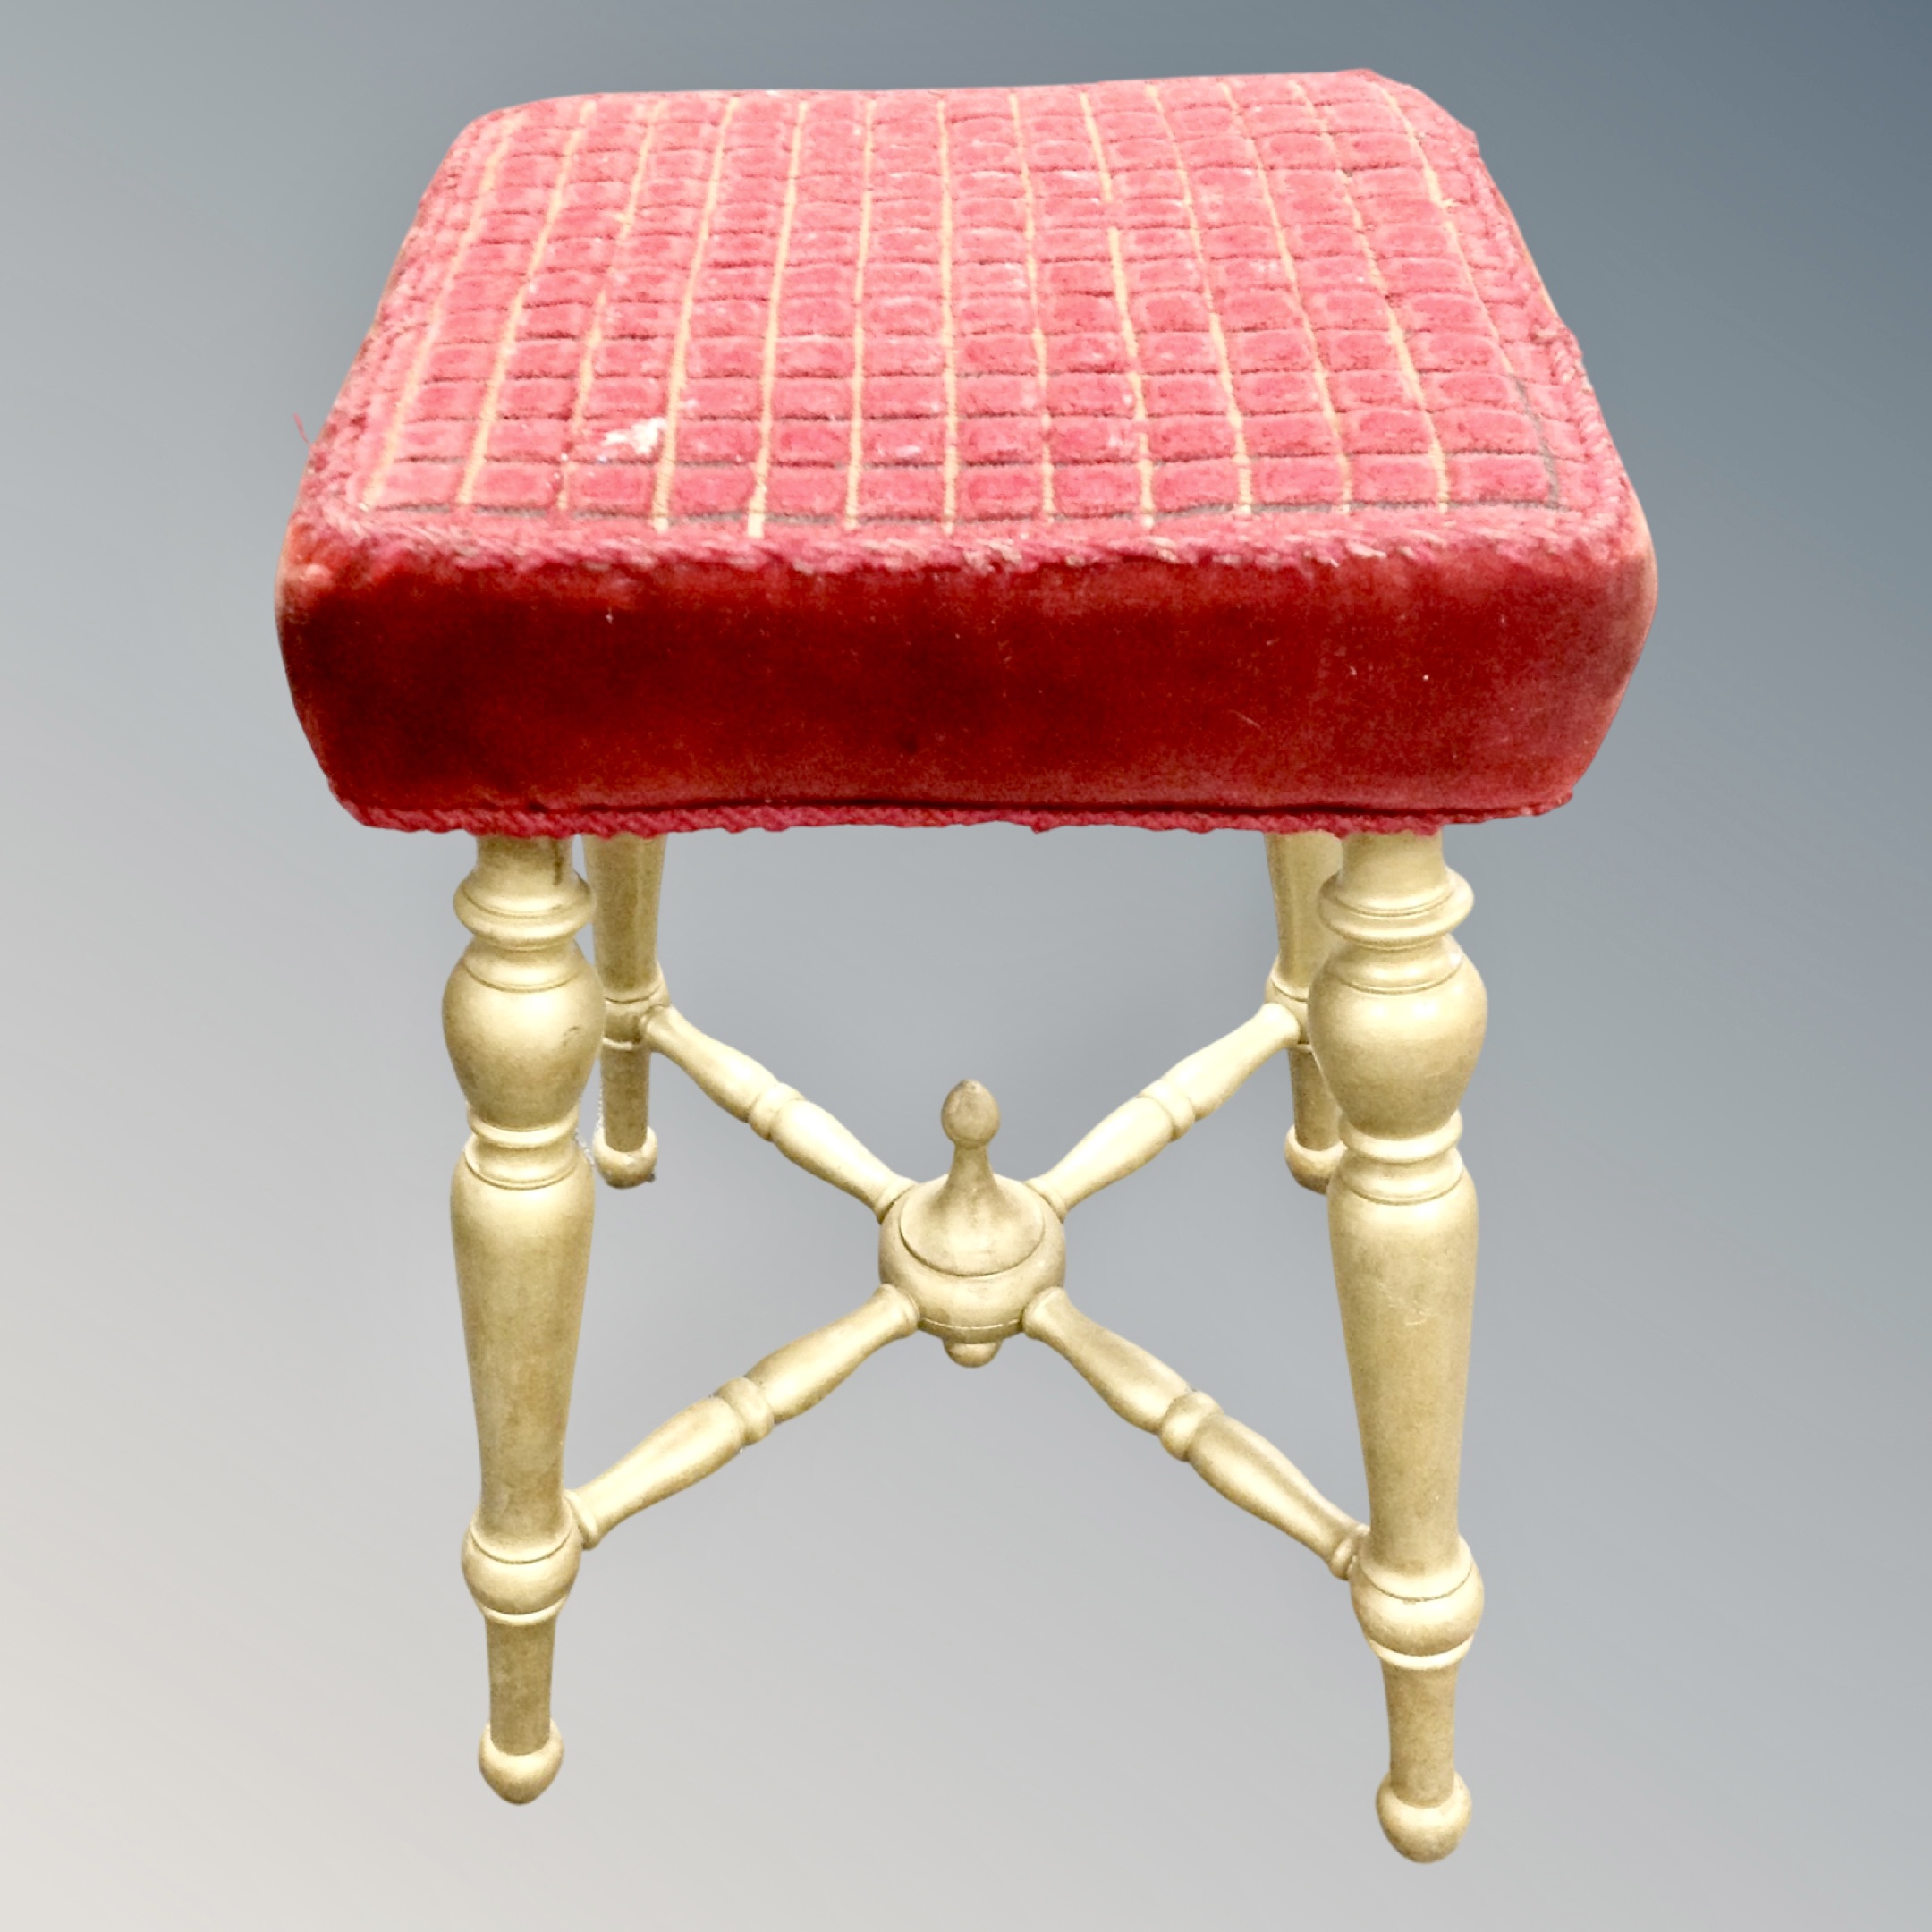 A gilt dressing table stool